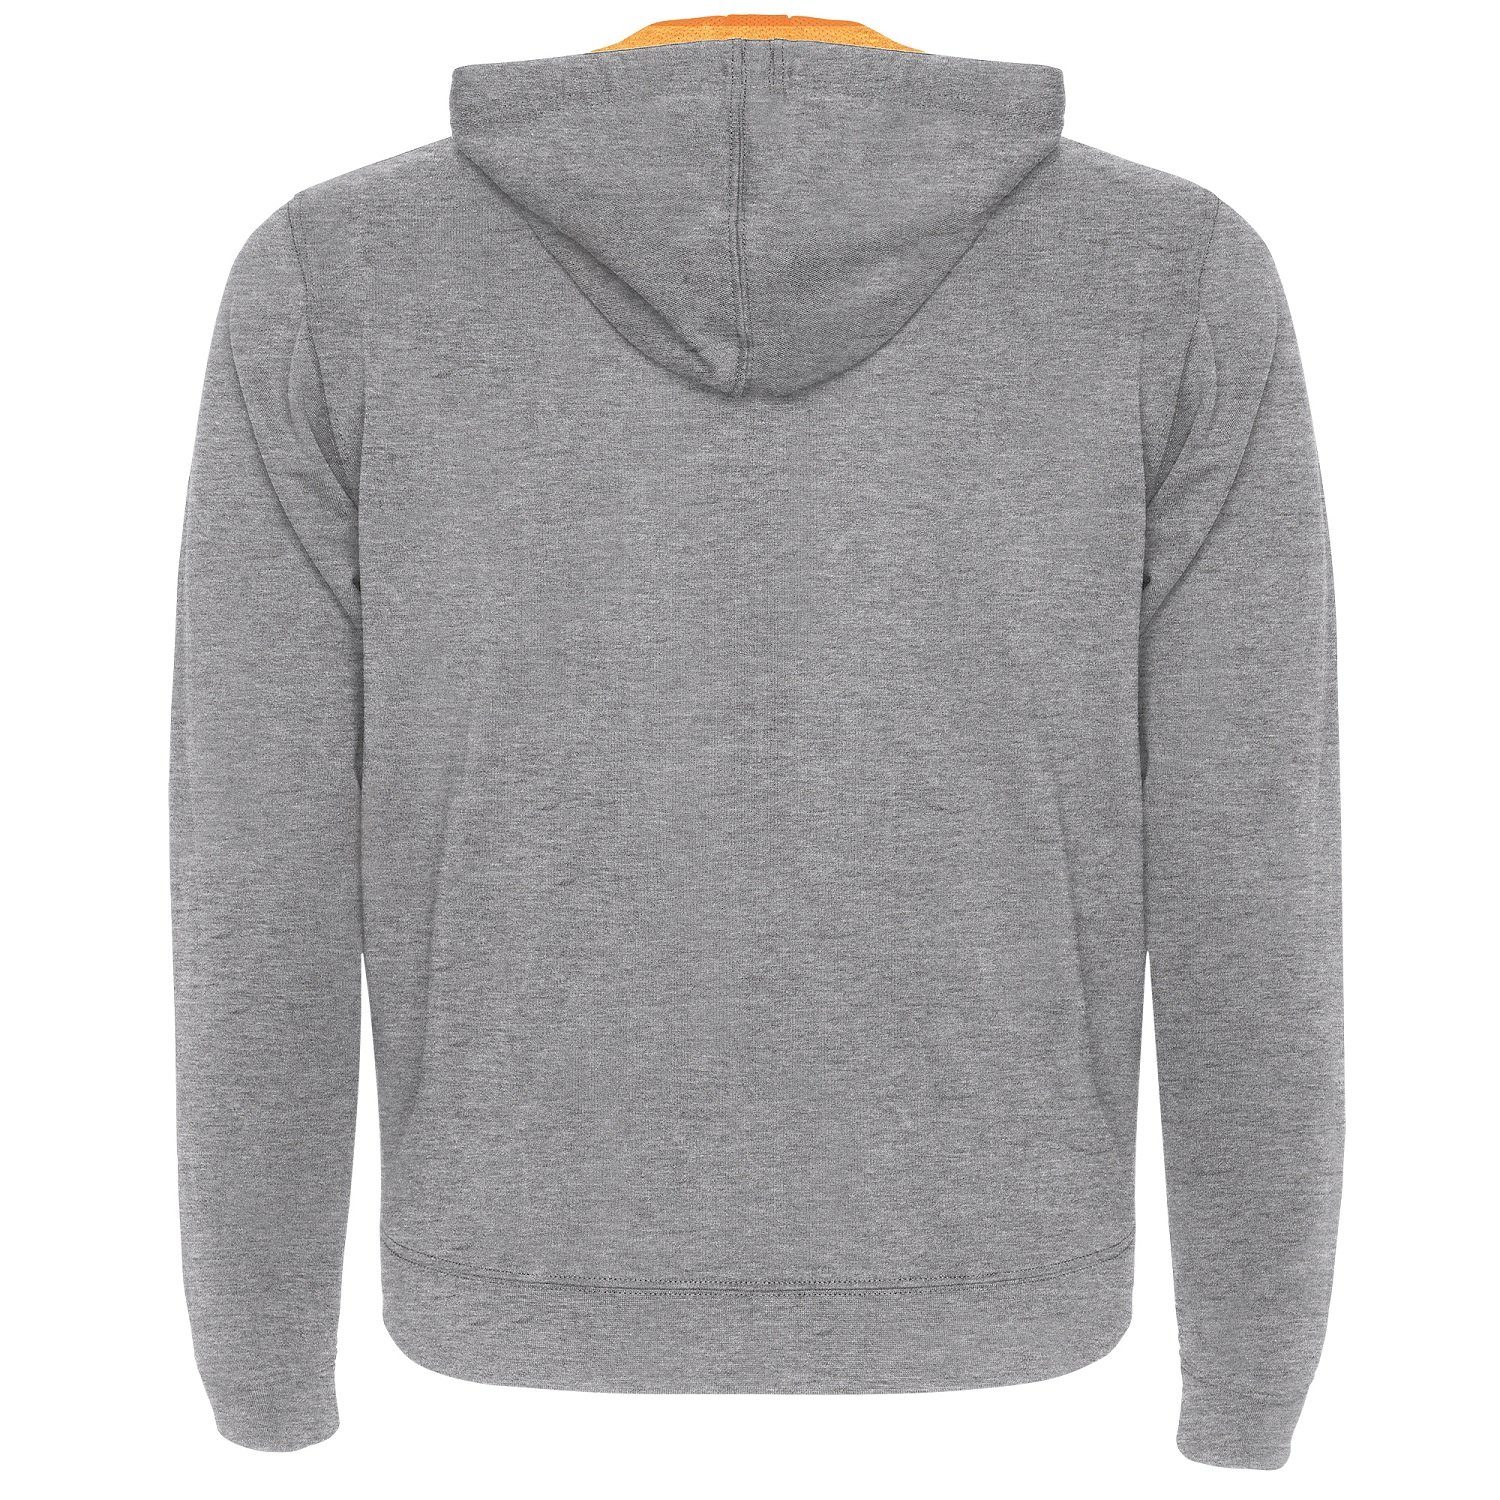 mit auch / Roly für Herren Reißverschluss Kapuzensweatjacke geeignet Grau/ Sweat-Jacke Kapuze Kapuzensweater mit Frauen Orange